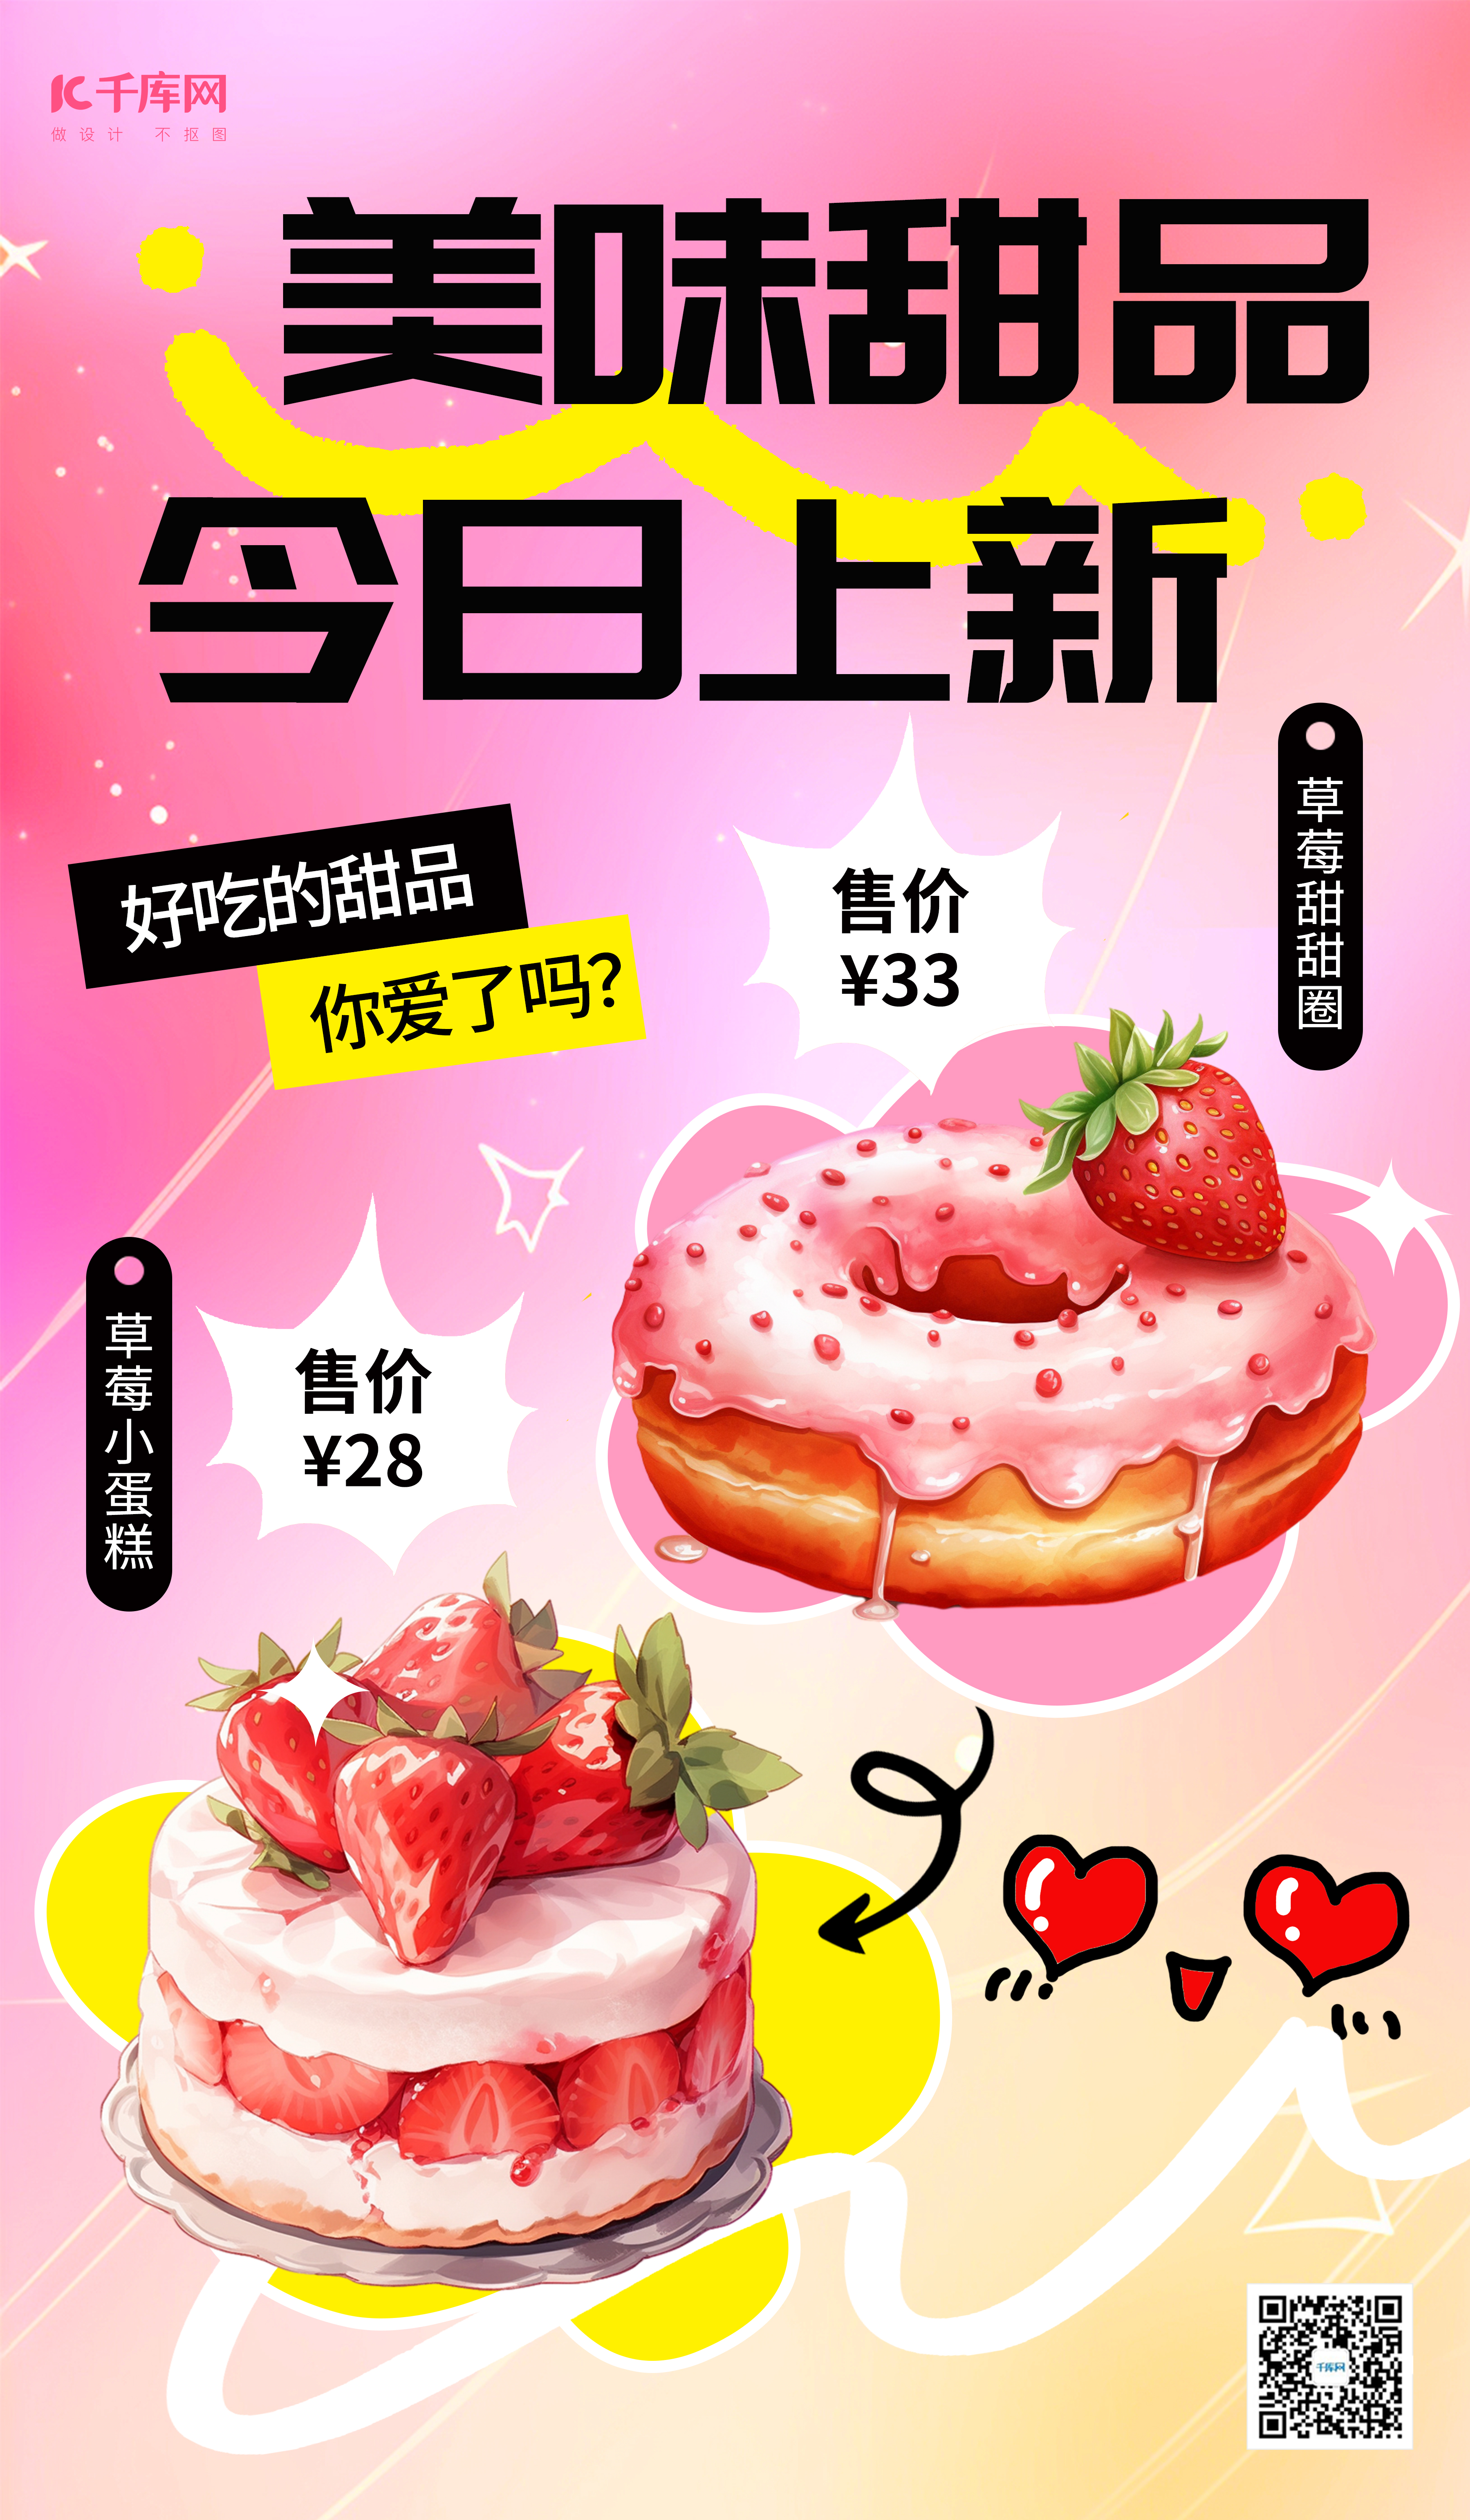 多巴胺甜品粉黄简约广告宣传AIGC广告宣传海报图片